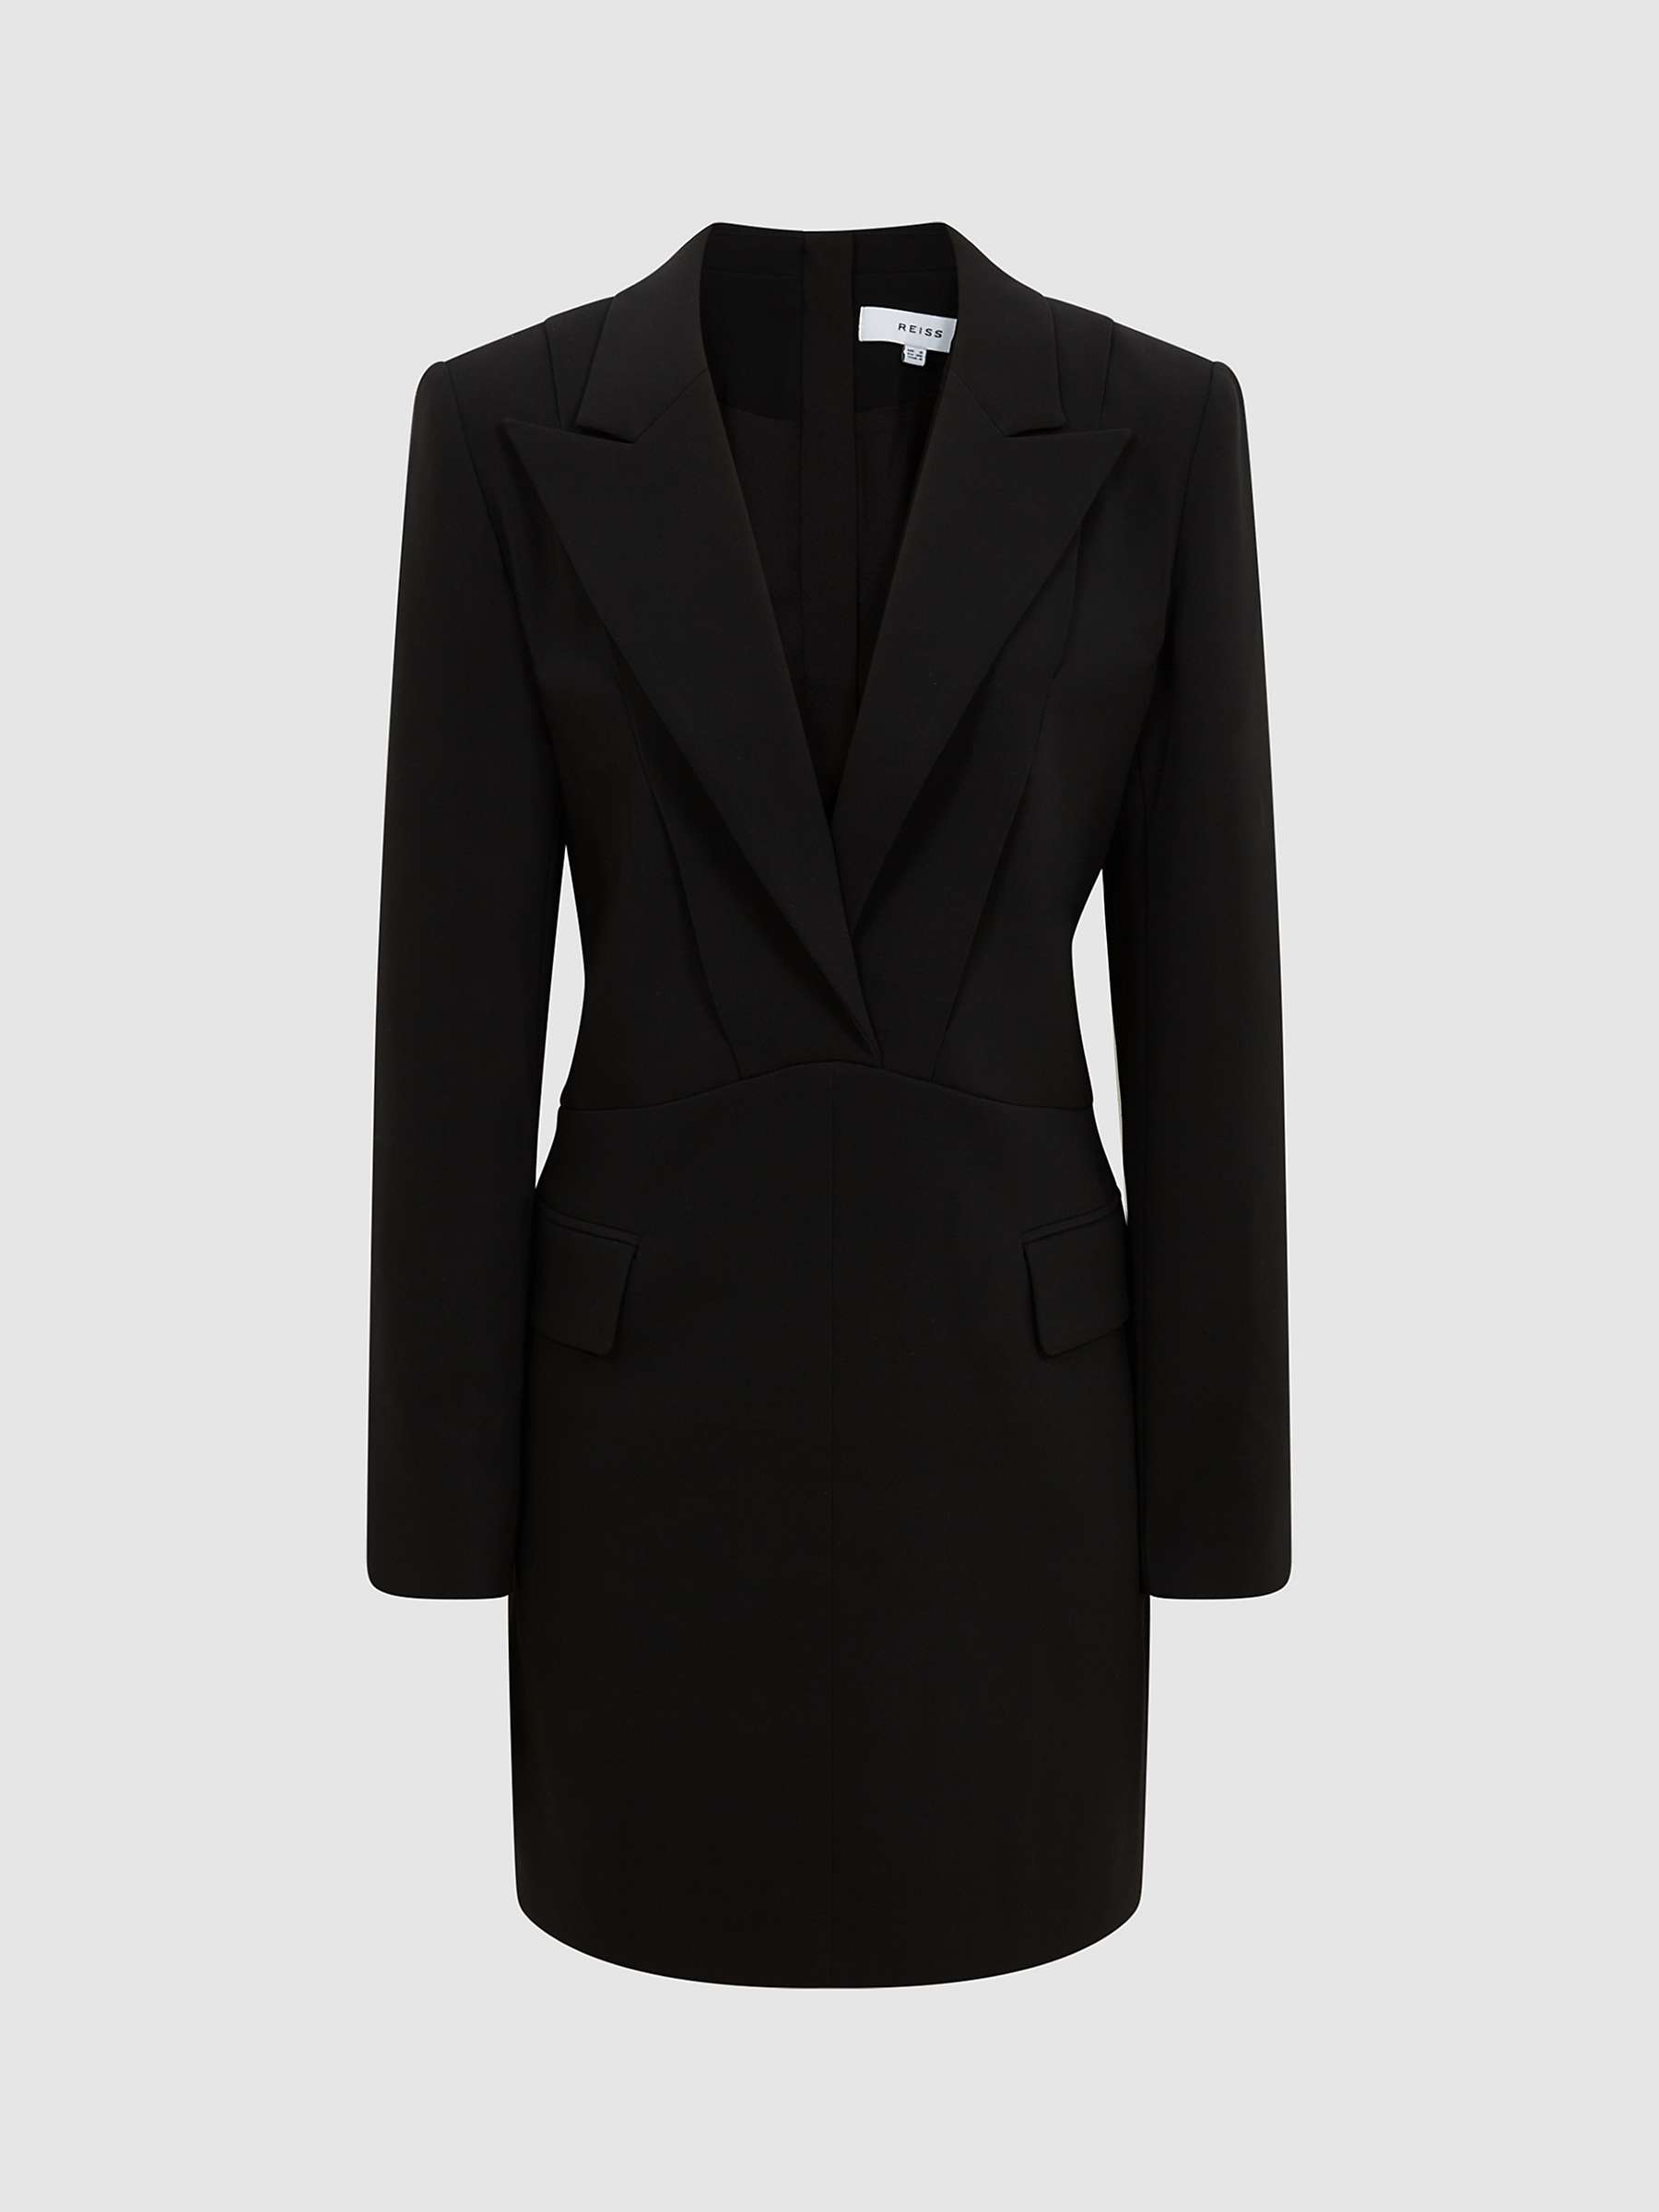 Reiss Karin Tuxedo Mini Dress, Black, Black at John Lewis & Partners